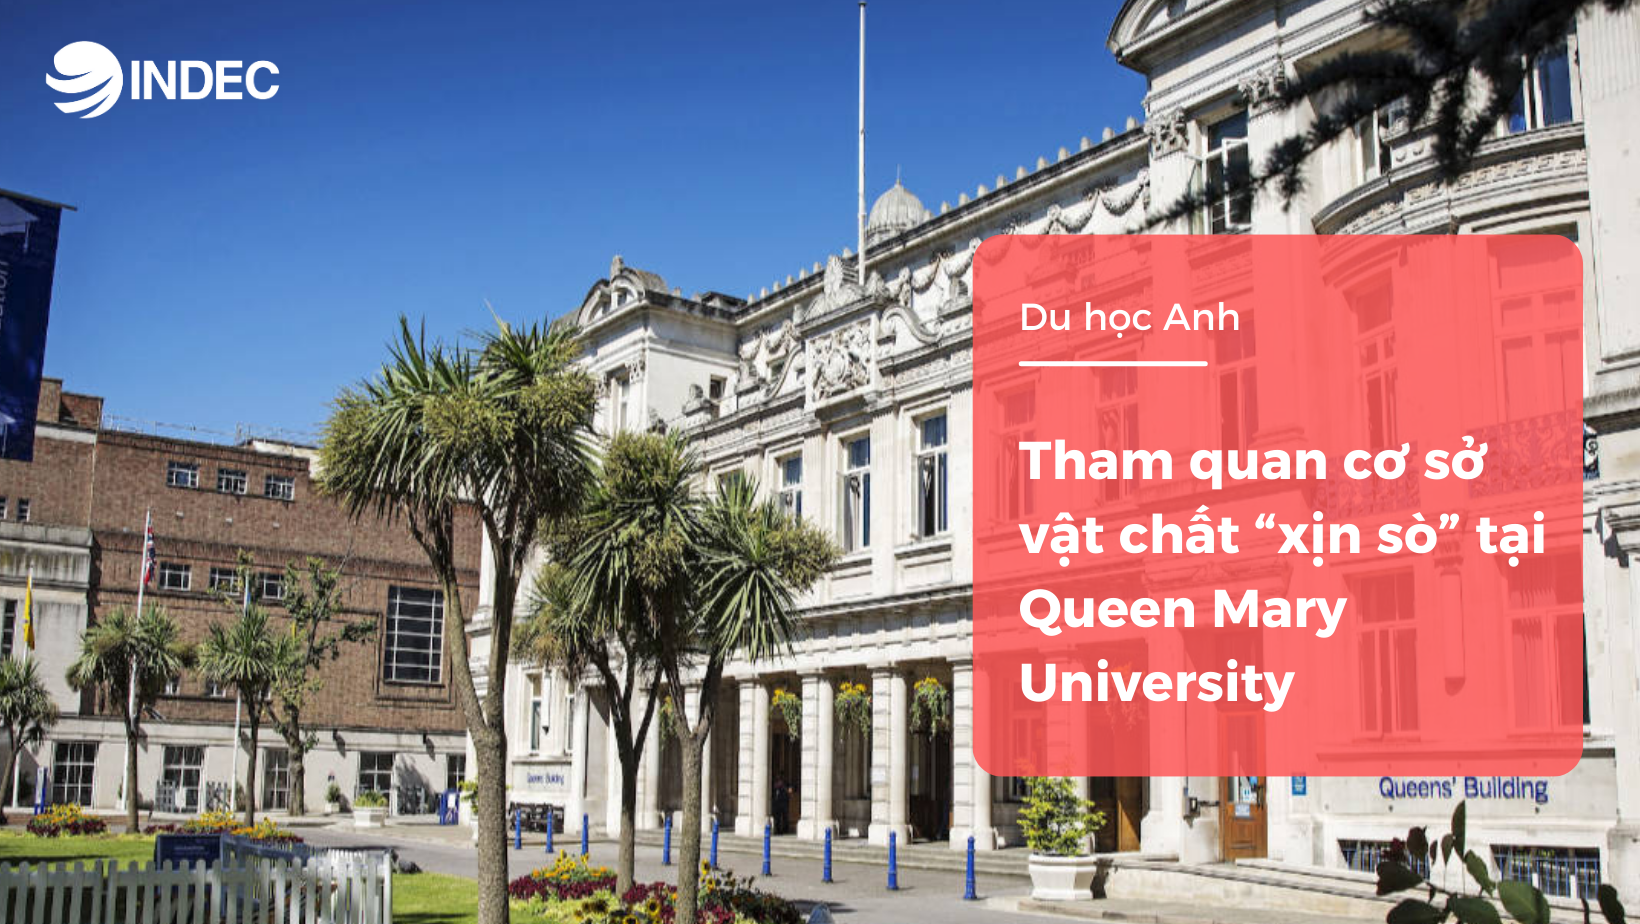 Tham quan cơ sở vật chất “xịn sò” tại Queen Mary University